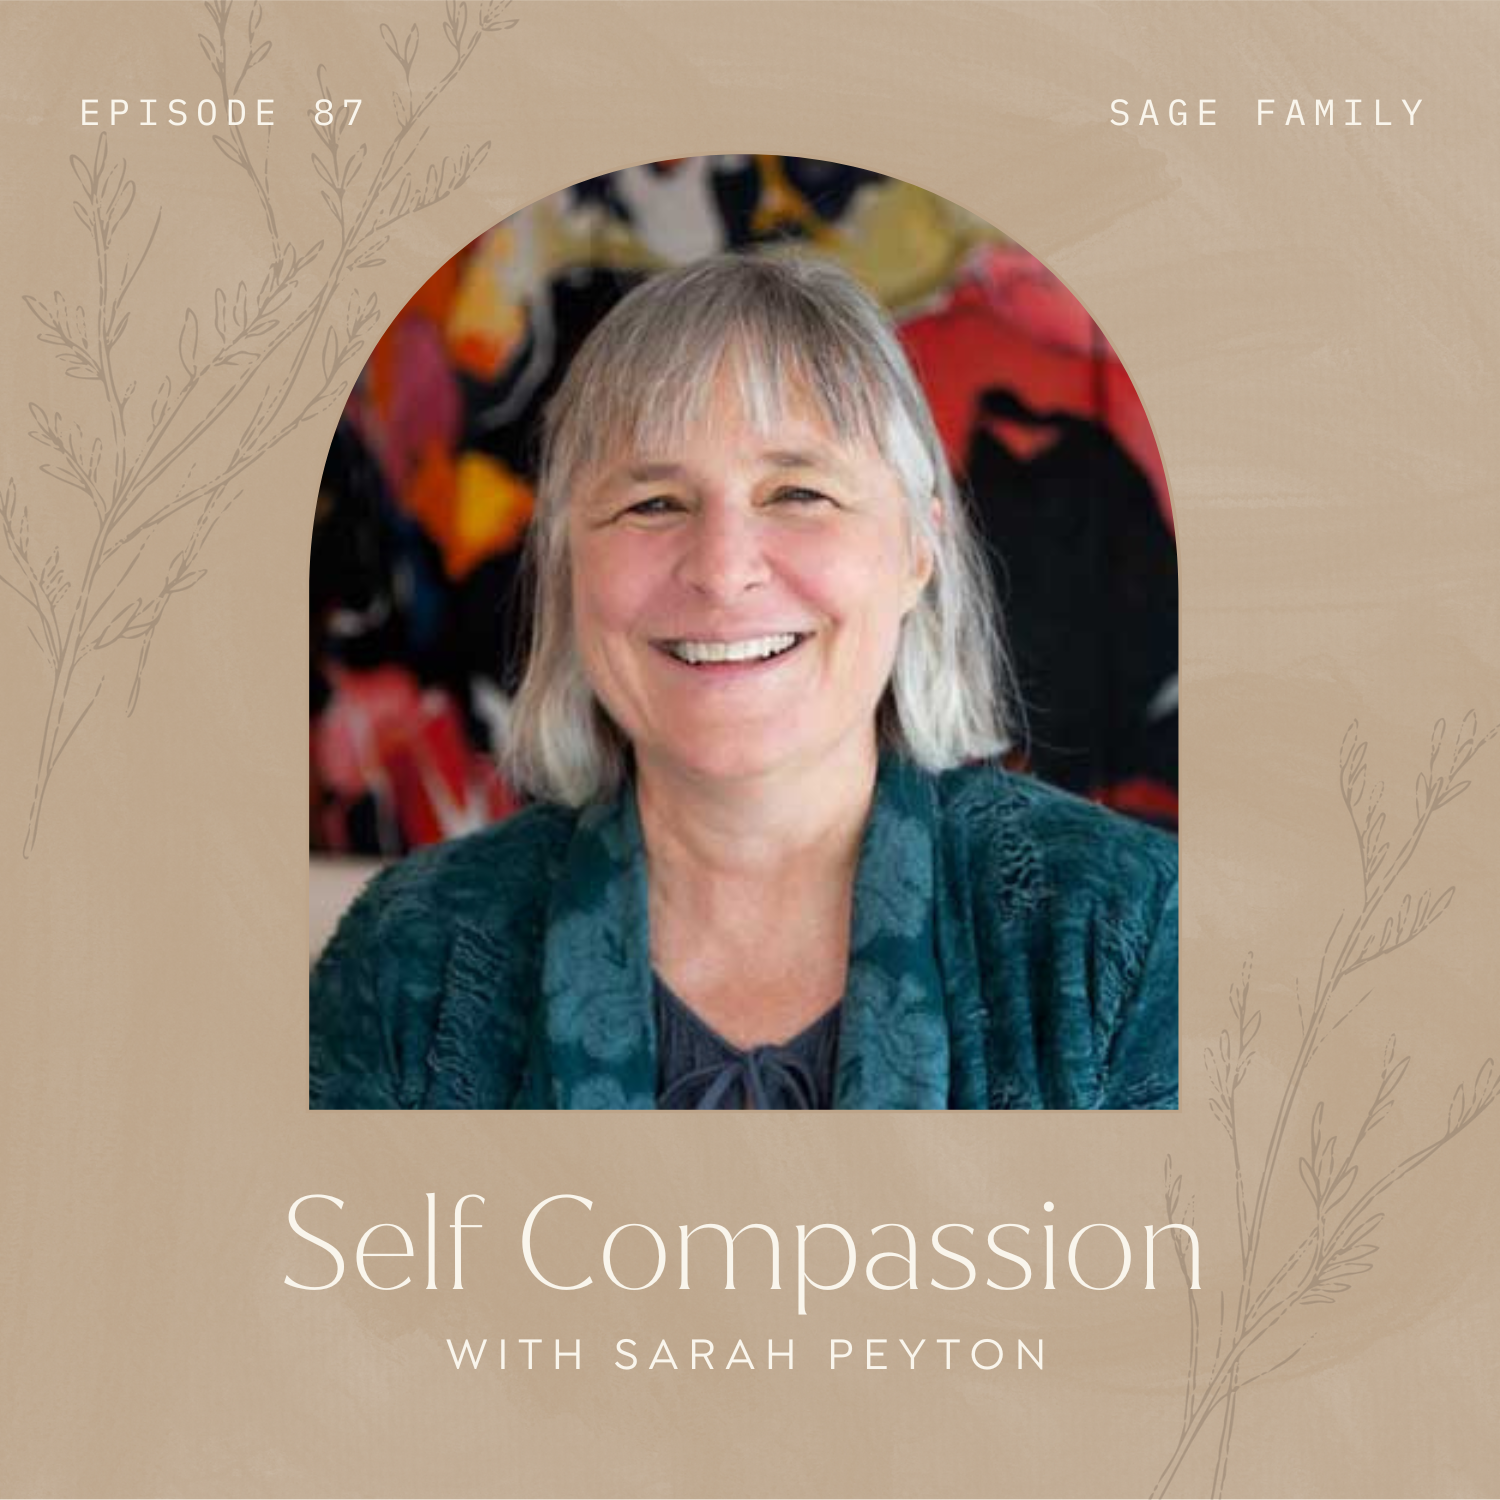 Self Compassion with Sarah Peyton